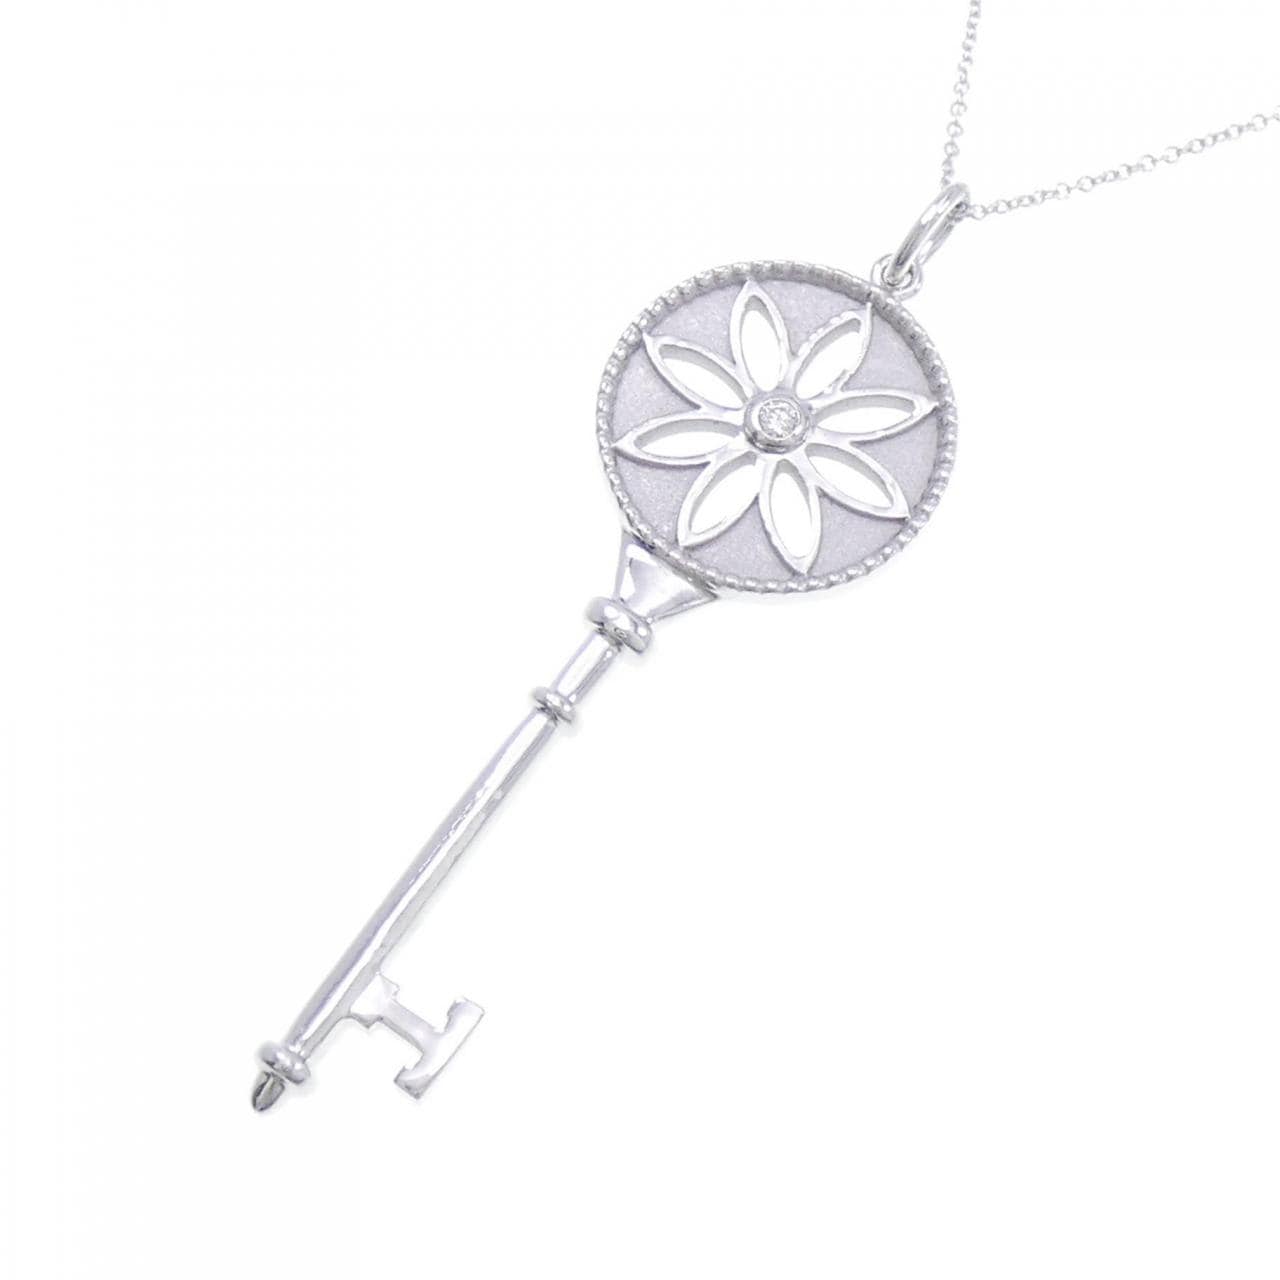 TIFFANY daisy key necklace